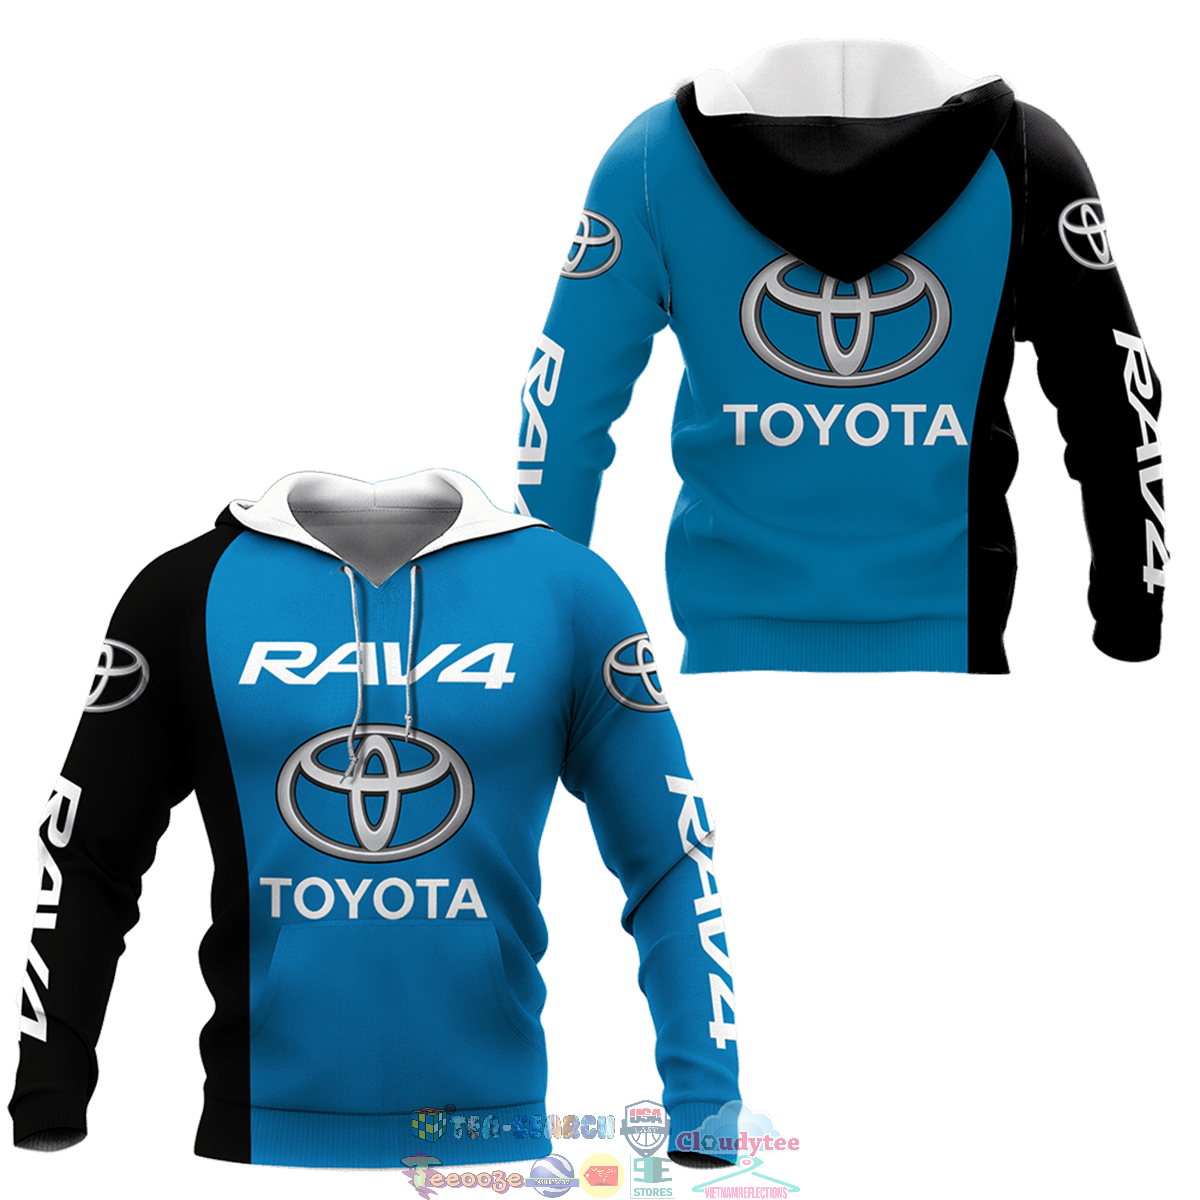 Toyota Rav4 ver 3 hoodie and t-shirt